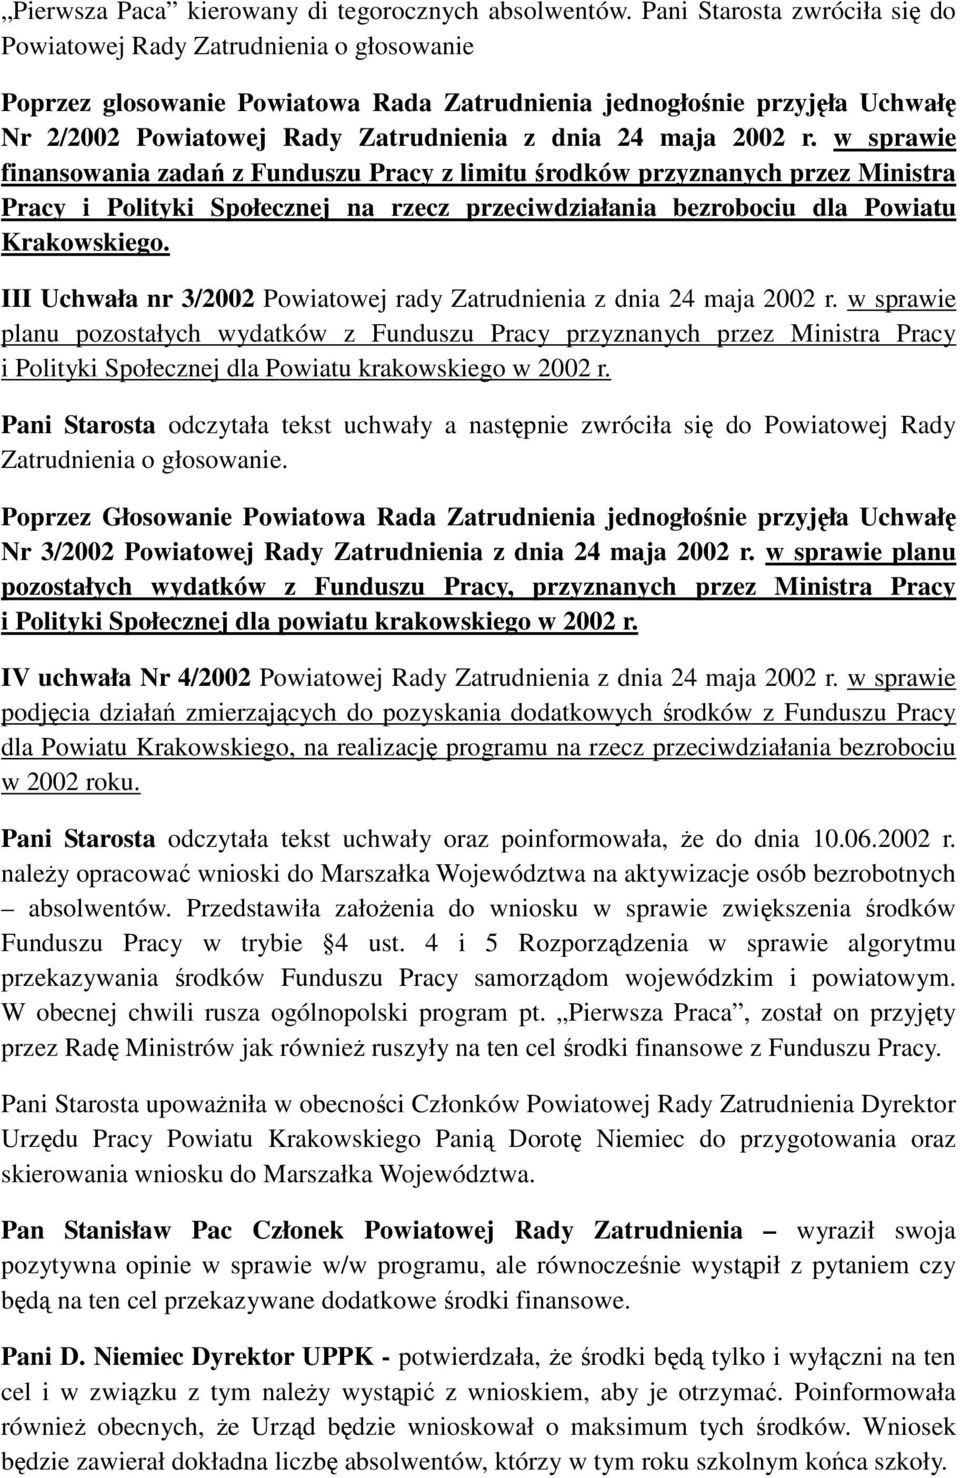 maja 2002 r. w sprawie finansowania zadań z Funduszu Pracy z limitu środków przyznanych przez Ministra Pracy i Polityki Społecznej na rzecz przeciwdziałania bezrobociu dla Powiatu Krakowskiego.